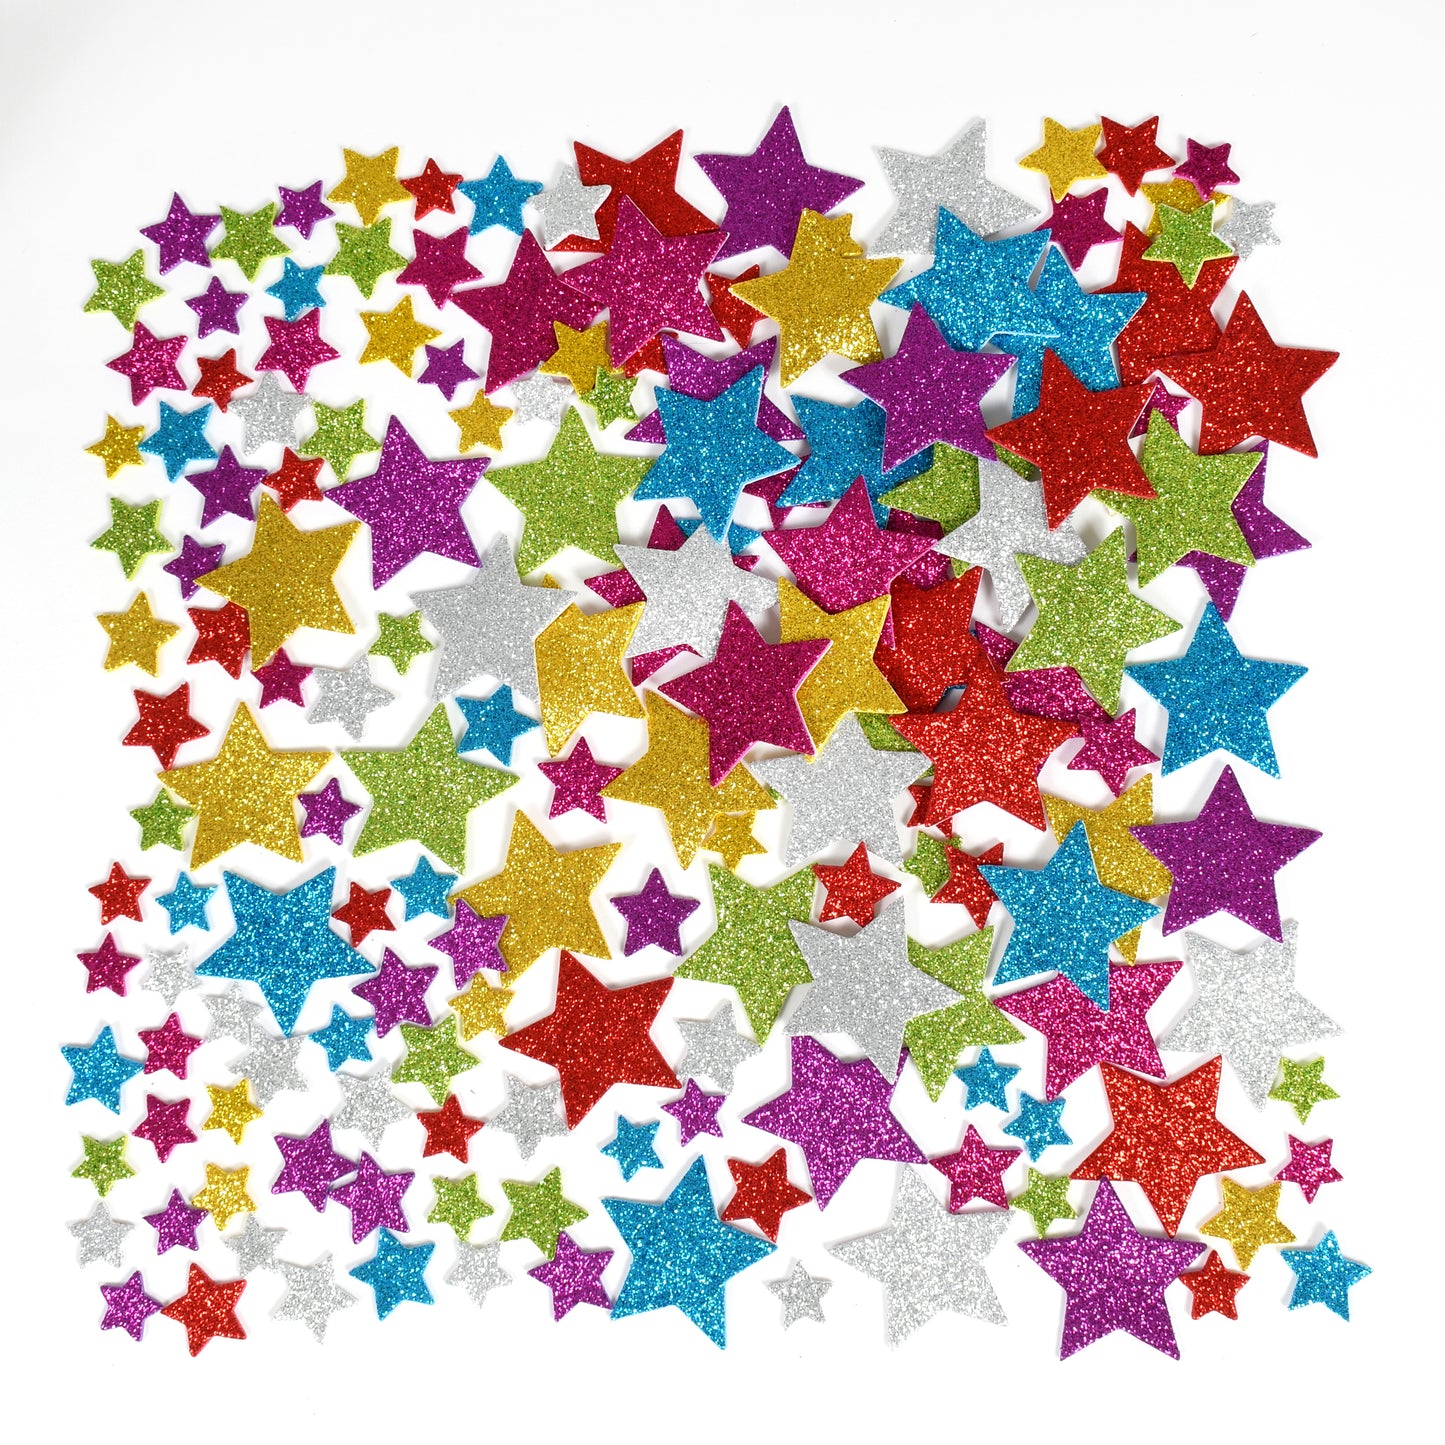 Glitter Foam Stickers - Stars - Multicolor, 168 Per Pack, 3 Packs